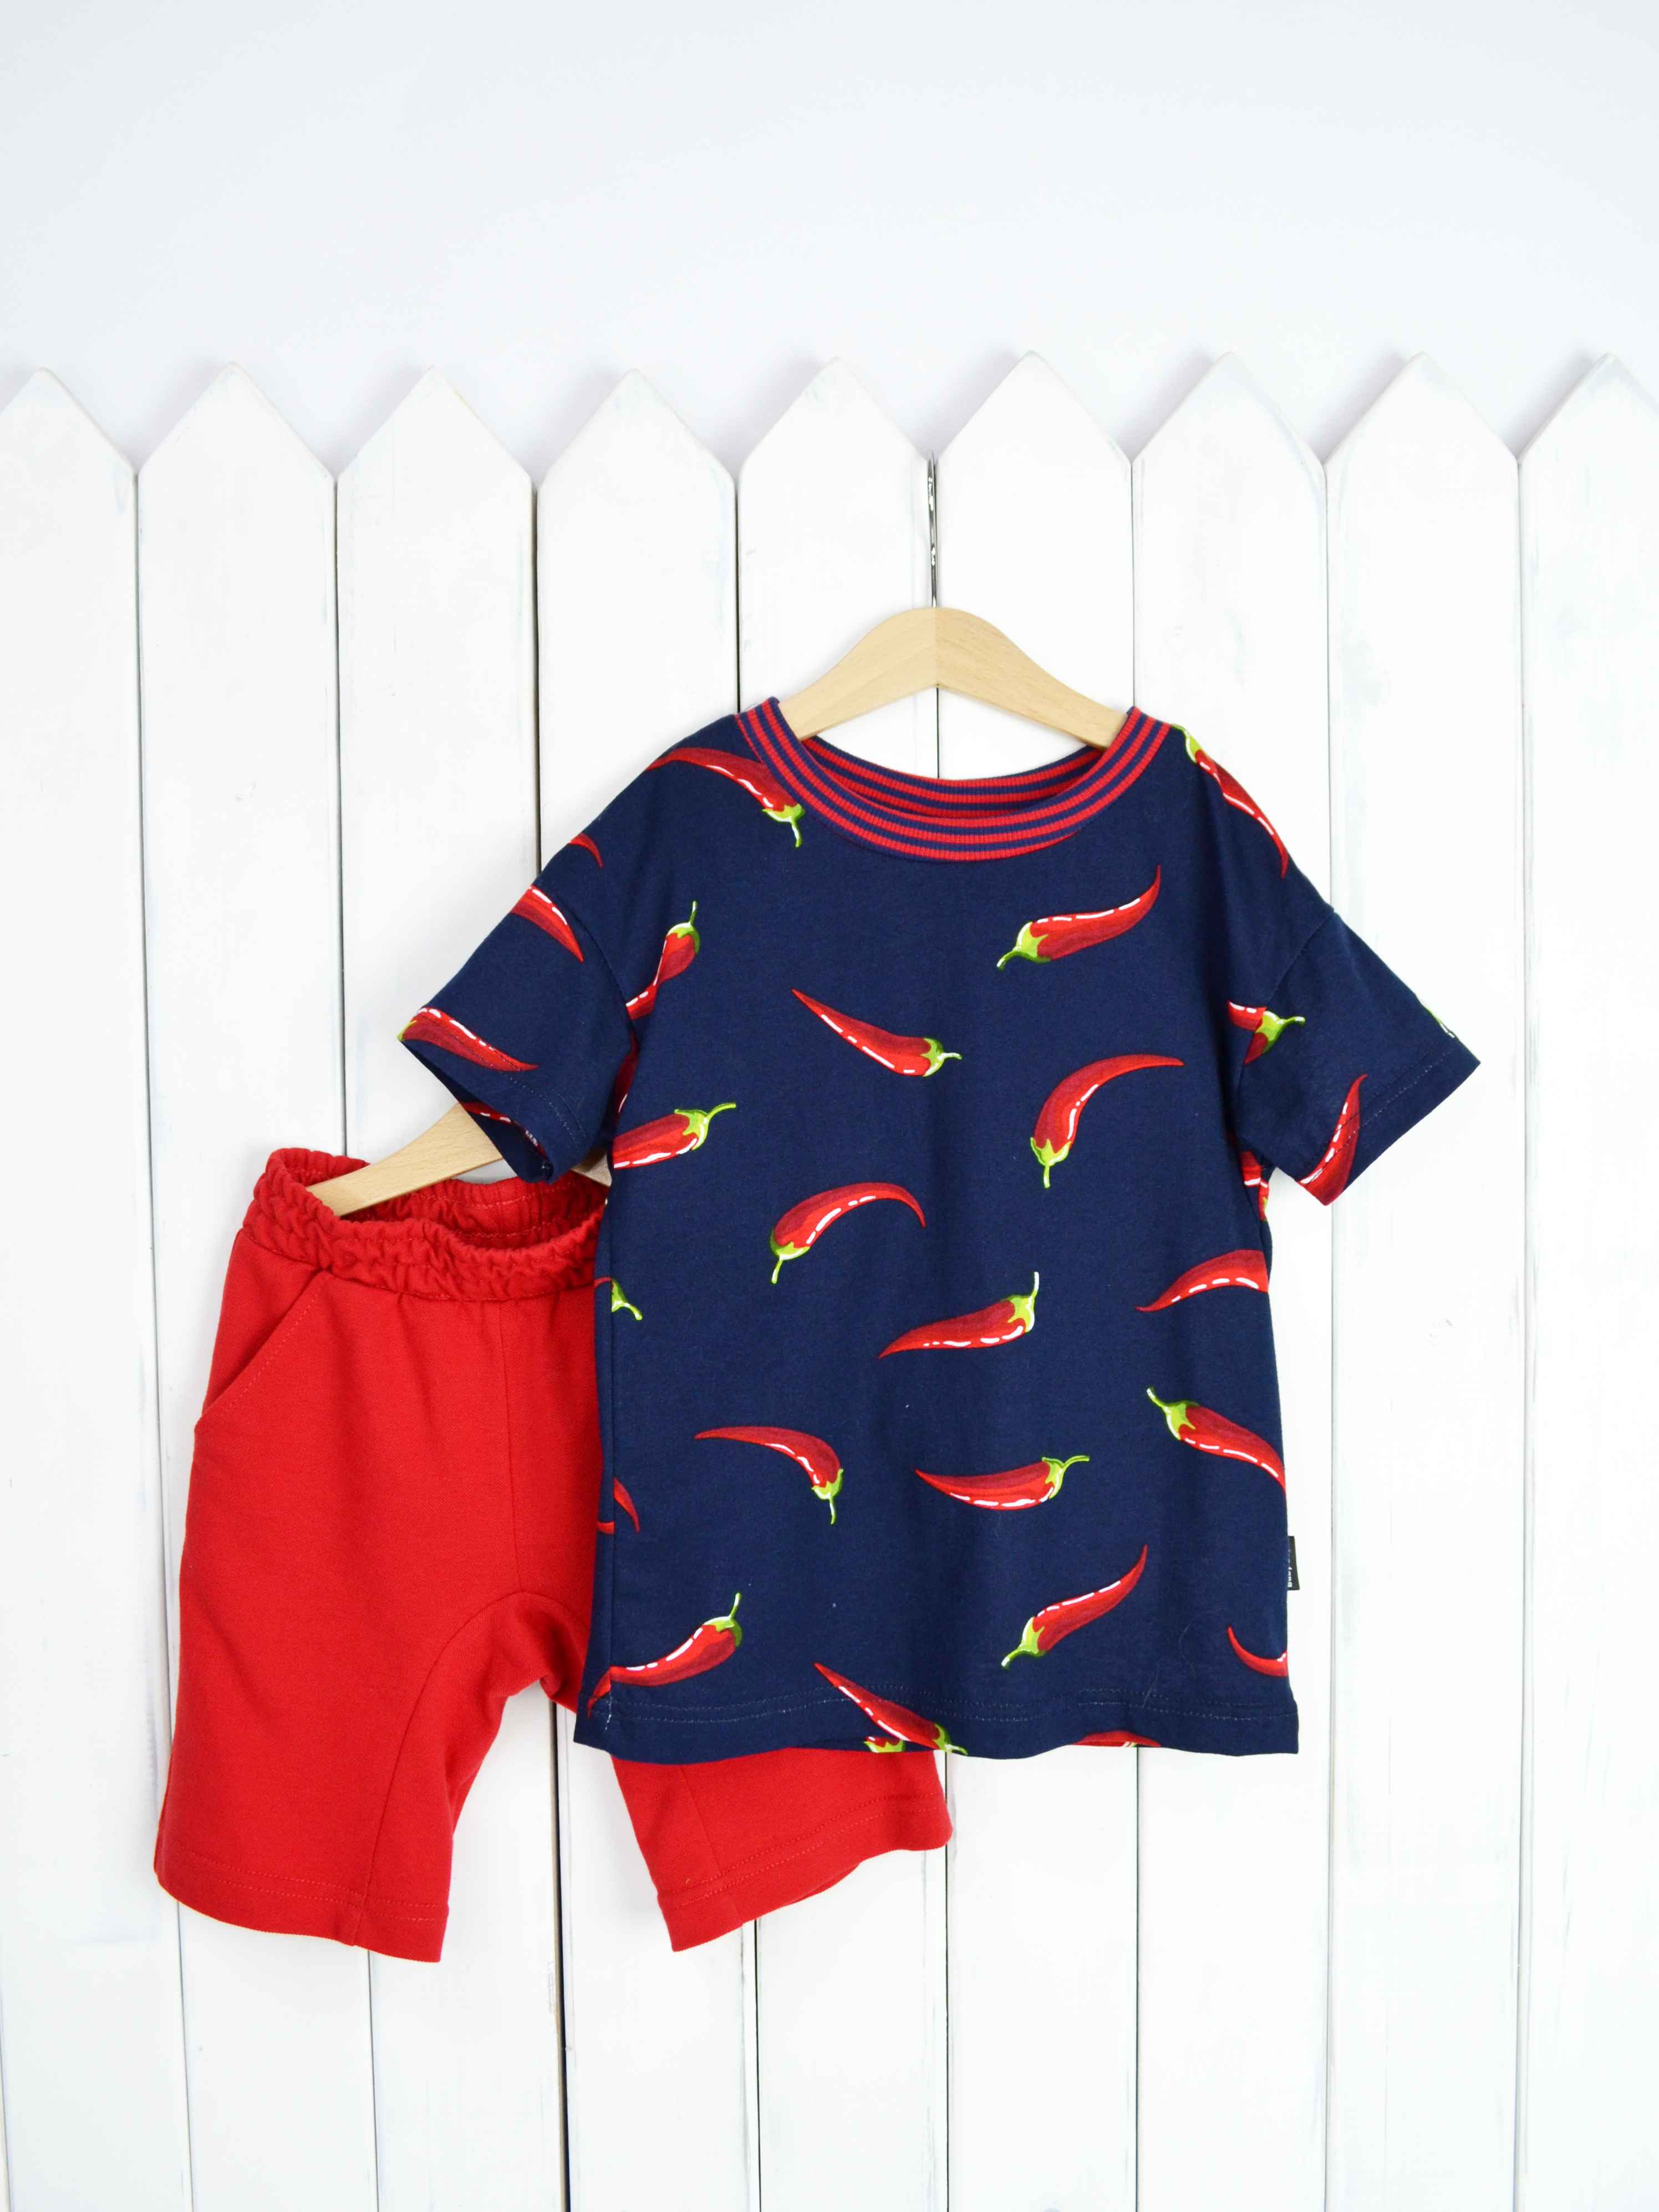 КД354/1-К Комплект детский р.122 Крутые перцы футболка+шорты/красное пике Бэби Бум - Самара 